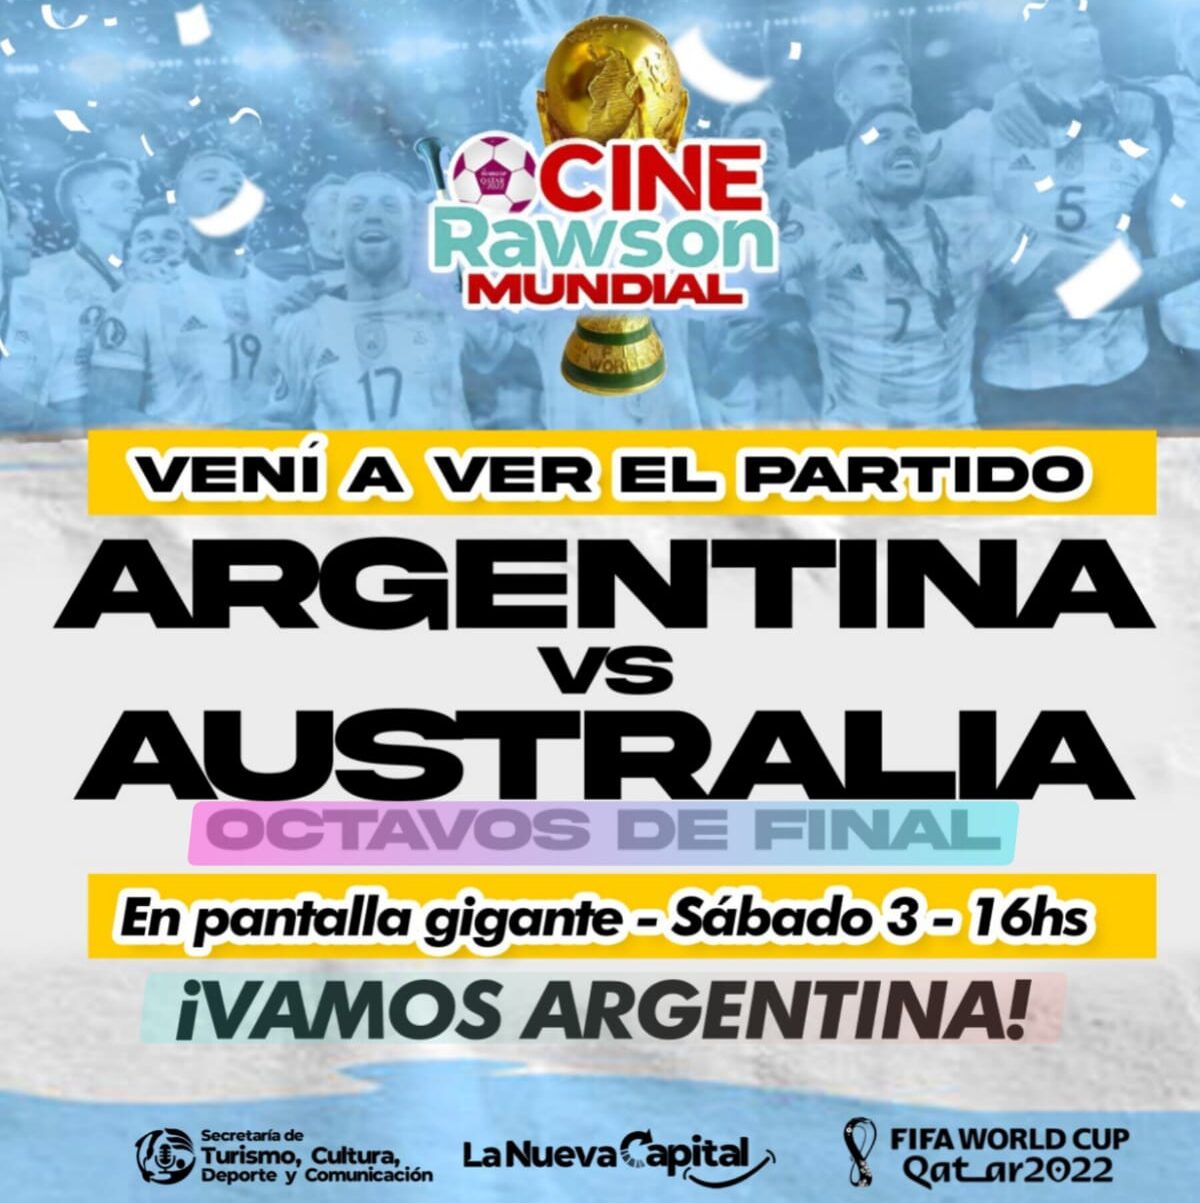 El Cine Teatro Rawson transmitirá el partido de la Selección Argentina en pantalla gigante